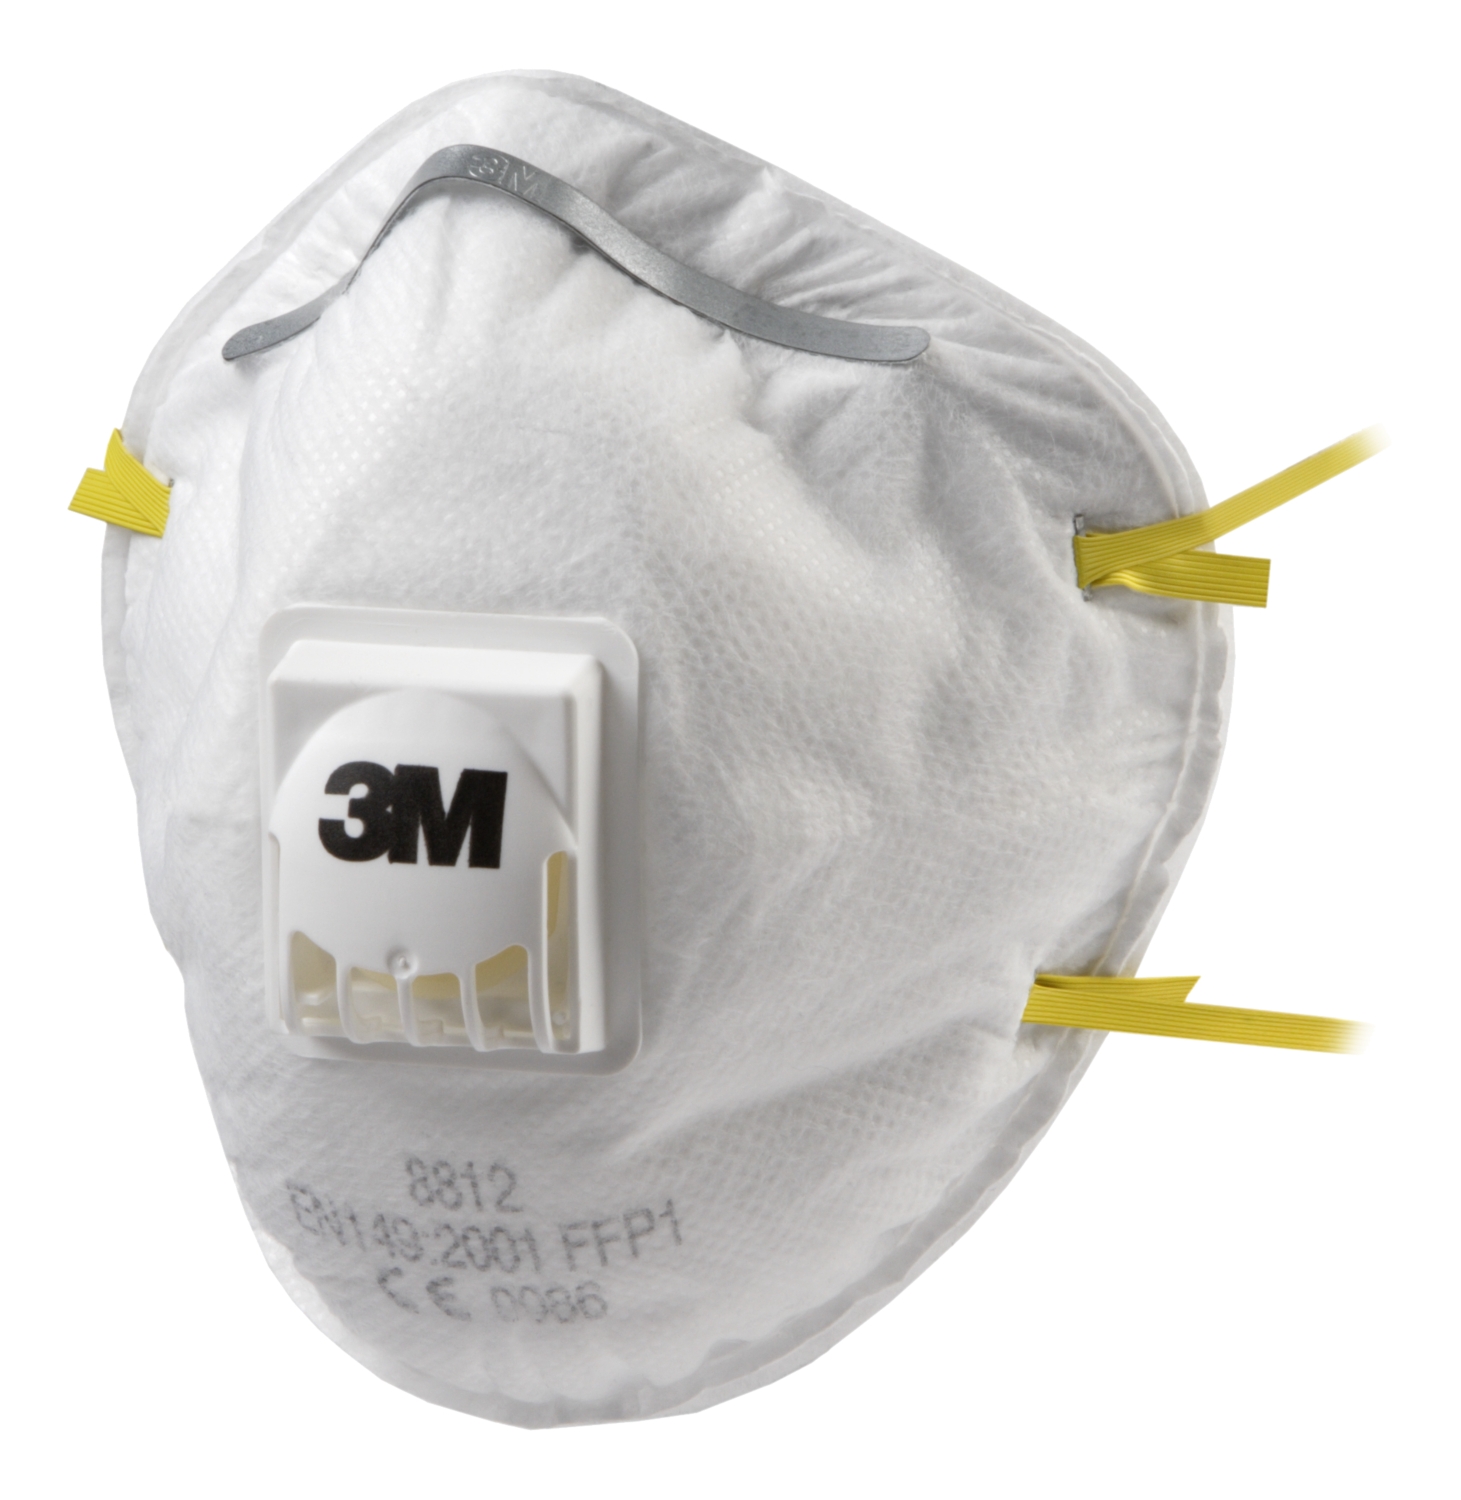 Bricoland - Equipement de protection - Lunette masque anti-poussière  transparente aérée par ventilation directe